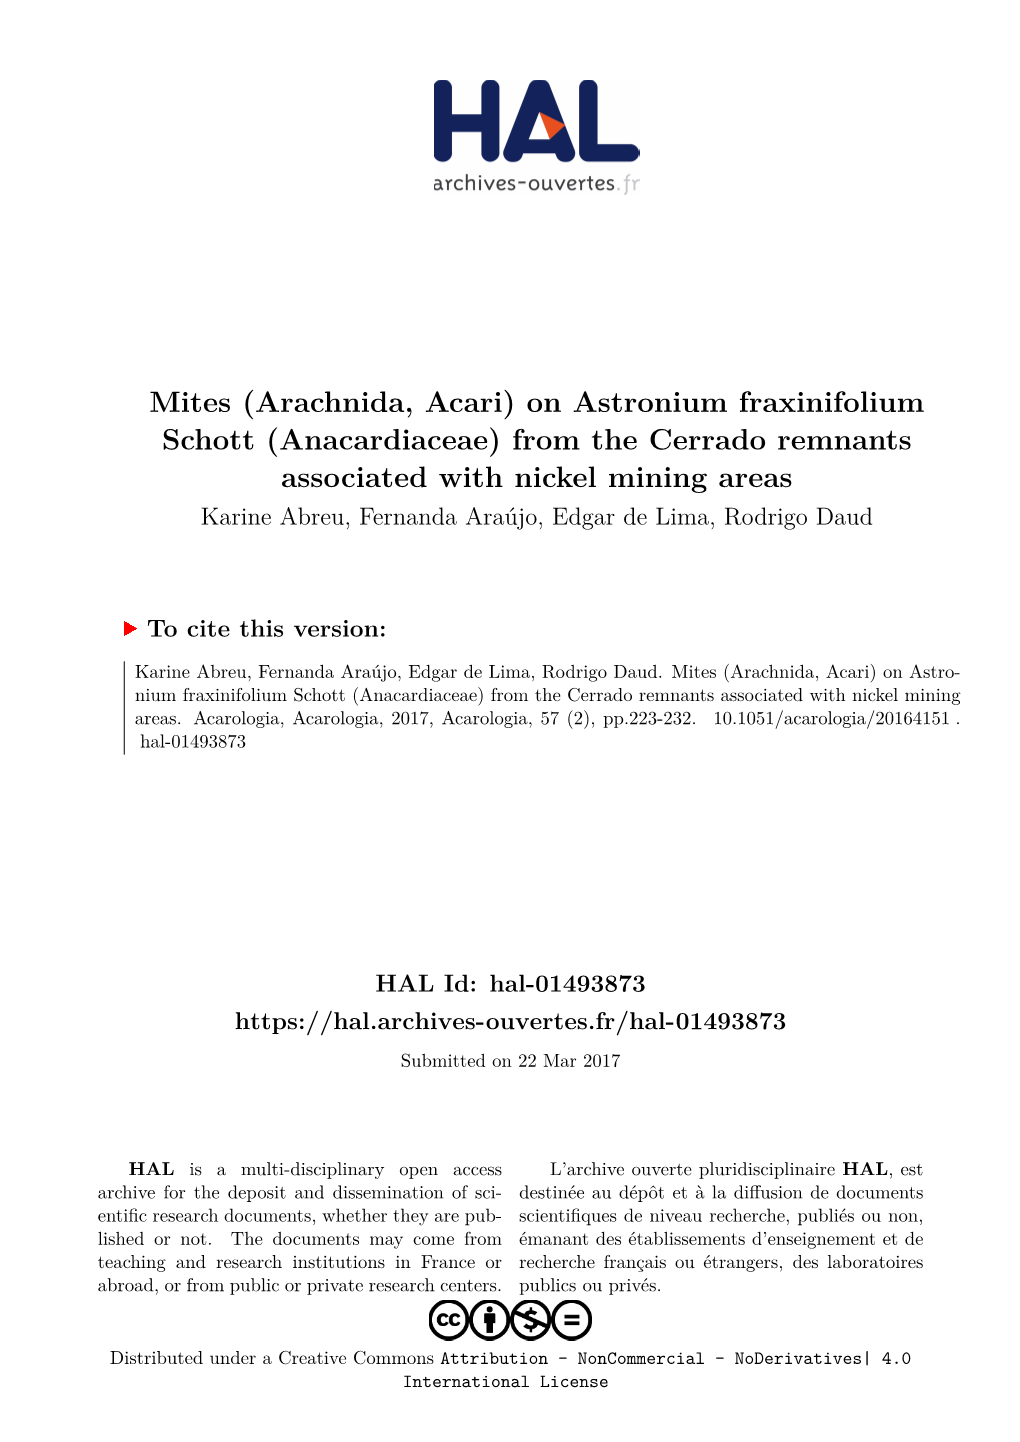 Mites (Arachnida, Acari) on Astronium Fraxinifolium Schott (Anacardiaceae